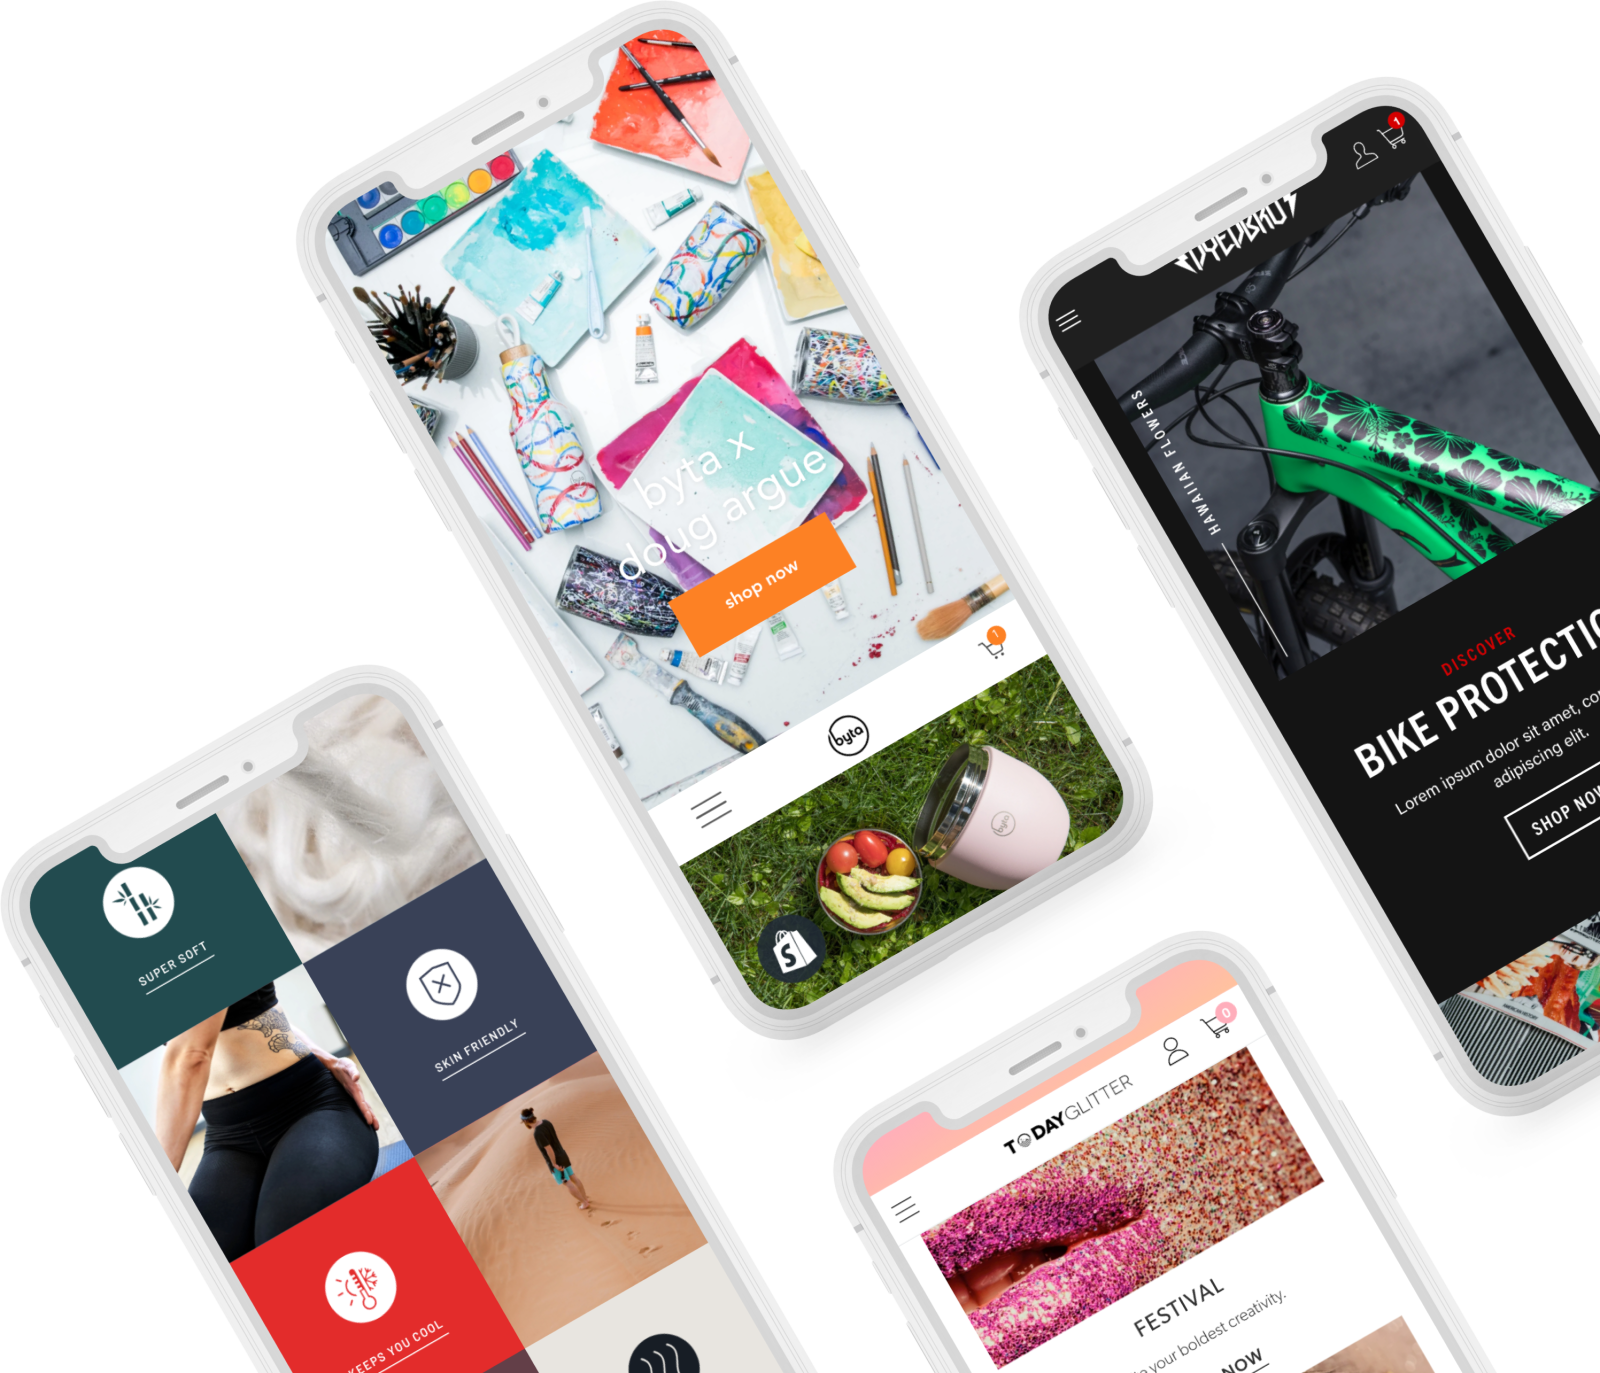 Tu Agencia Shopify Expert en España - Expertos especializados en diseño UX/UI, desarrollo Shopify y marketing para tiendas online.